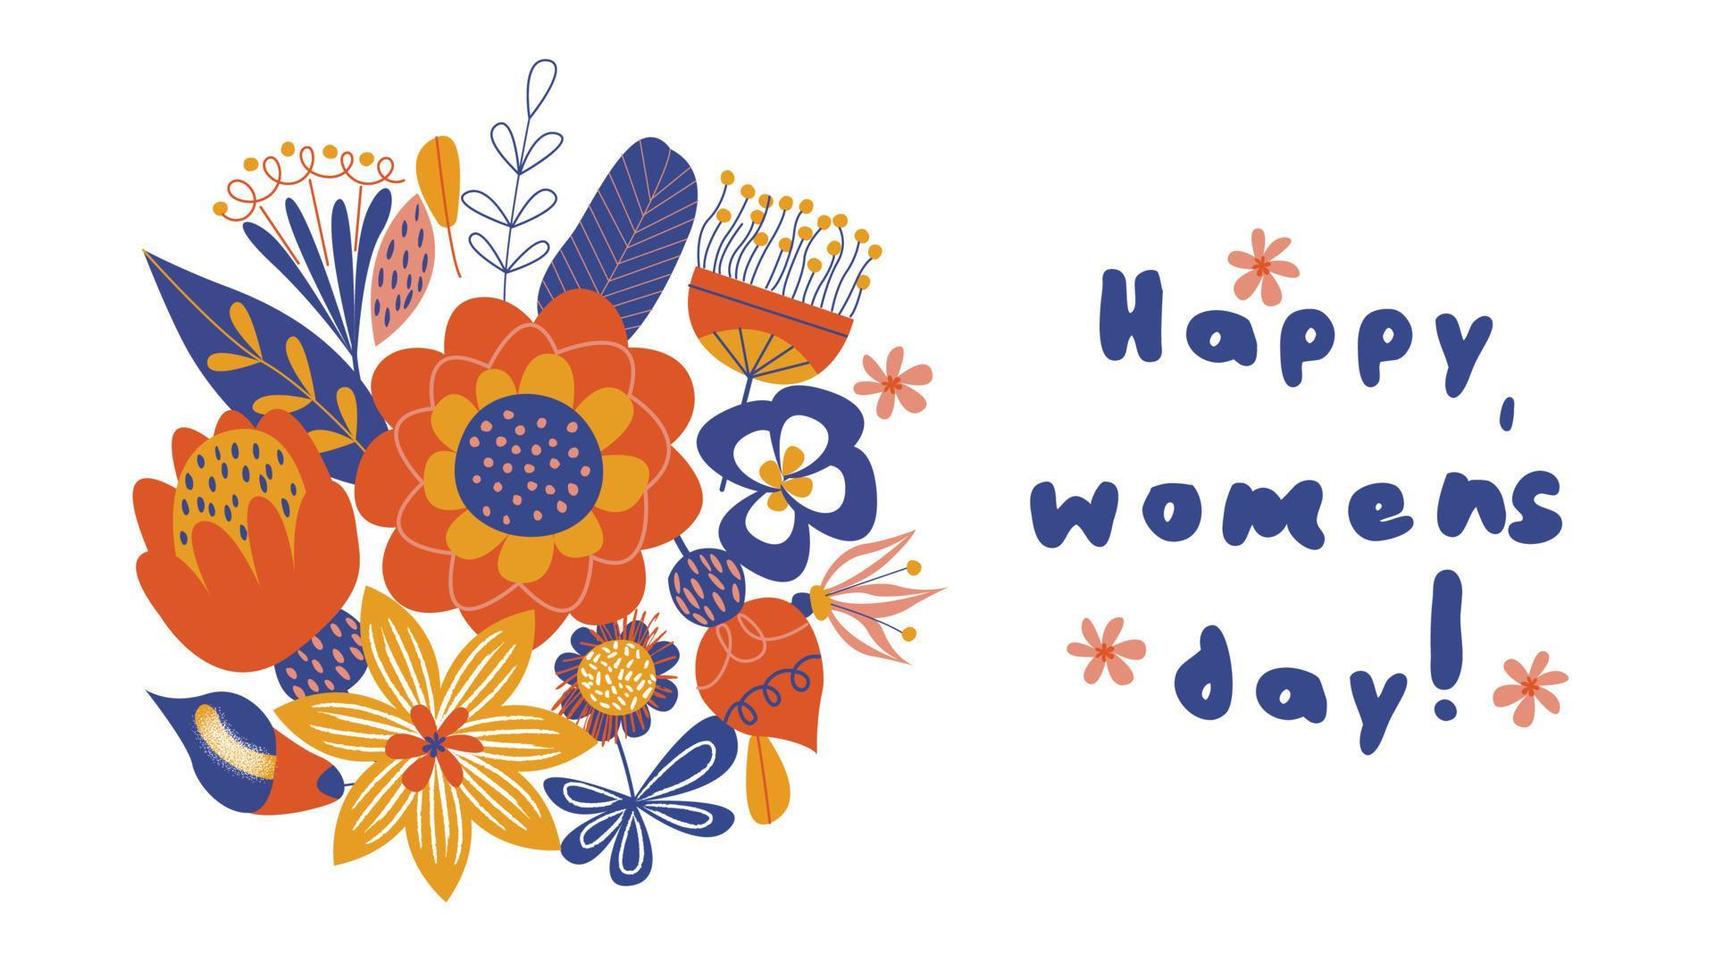 biglietto di auguri, striscione per la giornata internazionale della donna l'8 marzo. mazzi di fiori colorati. illustrazione vettoriale su sfondo bianco.